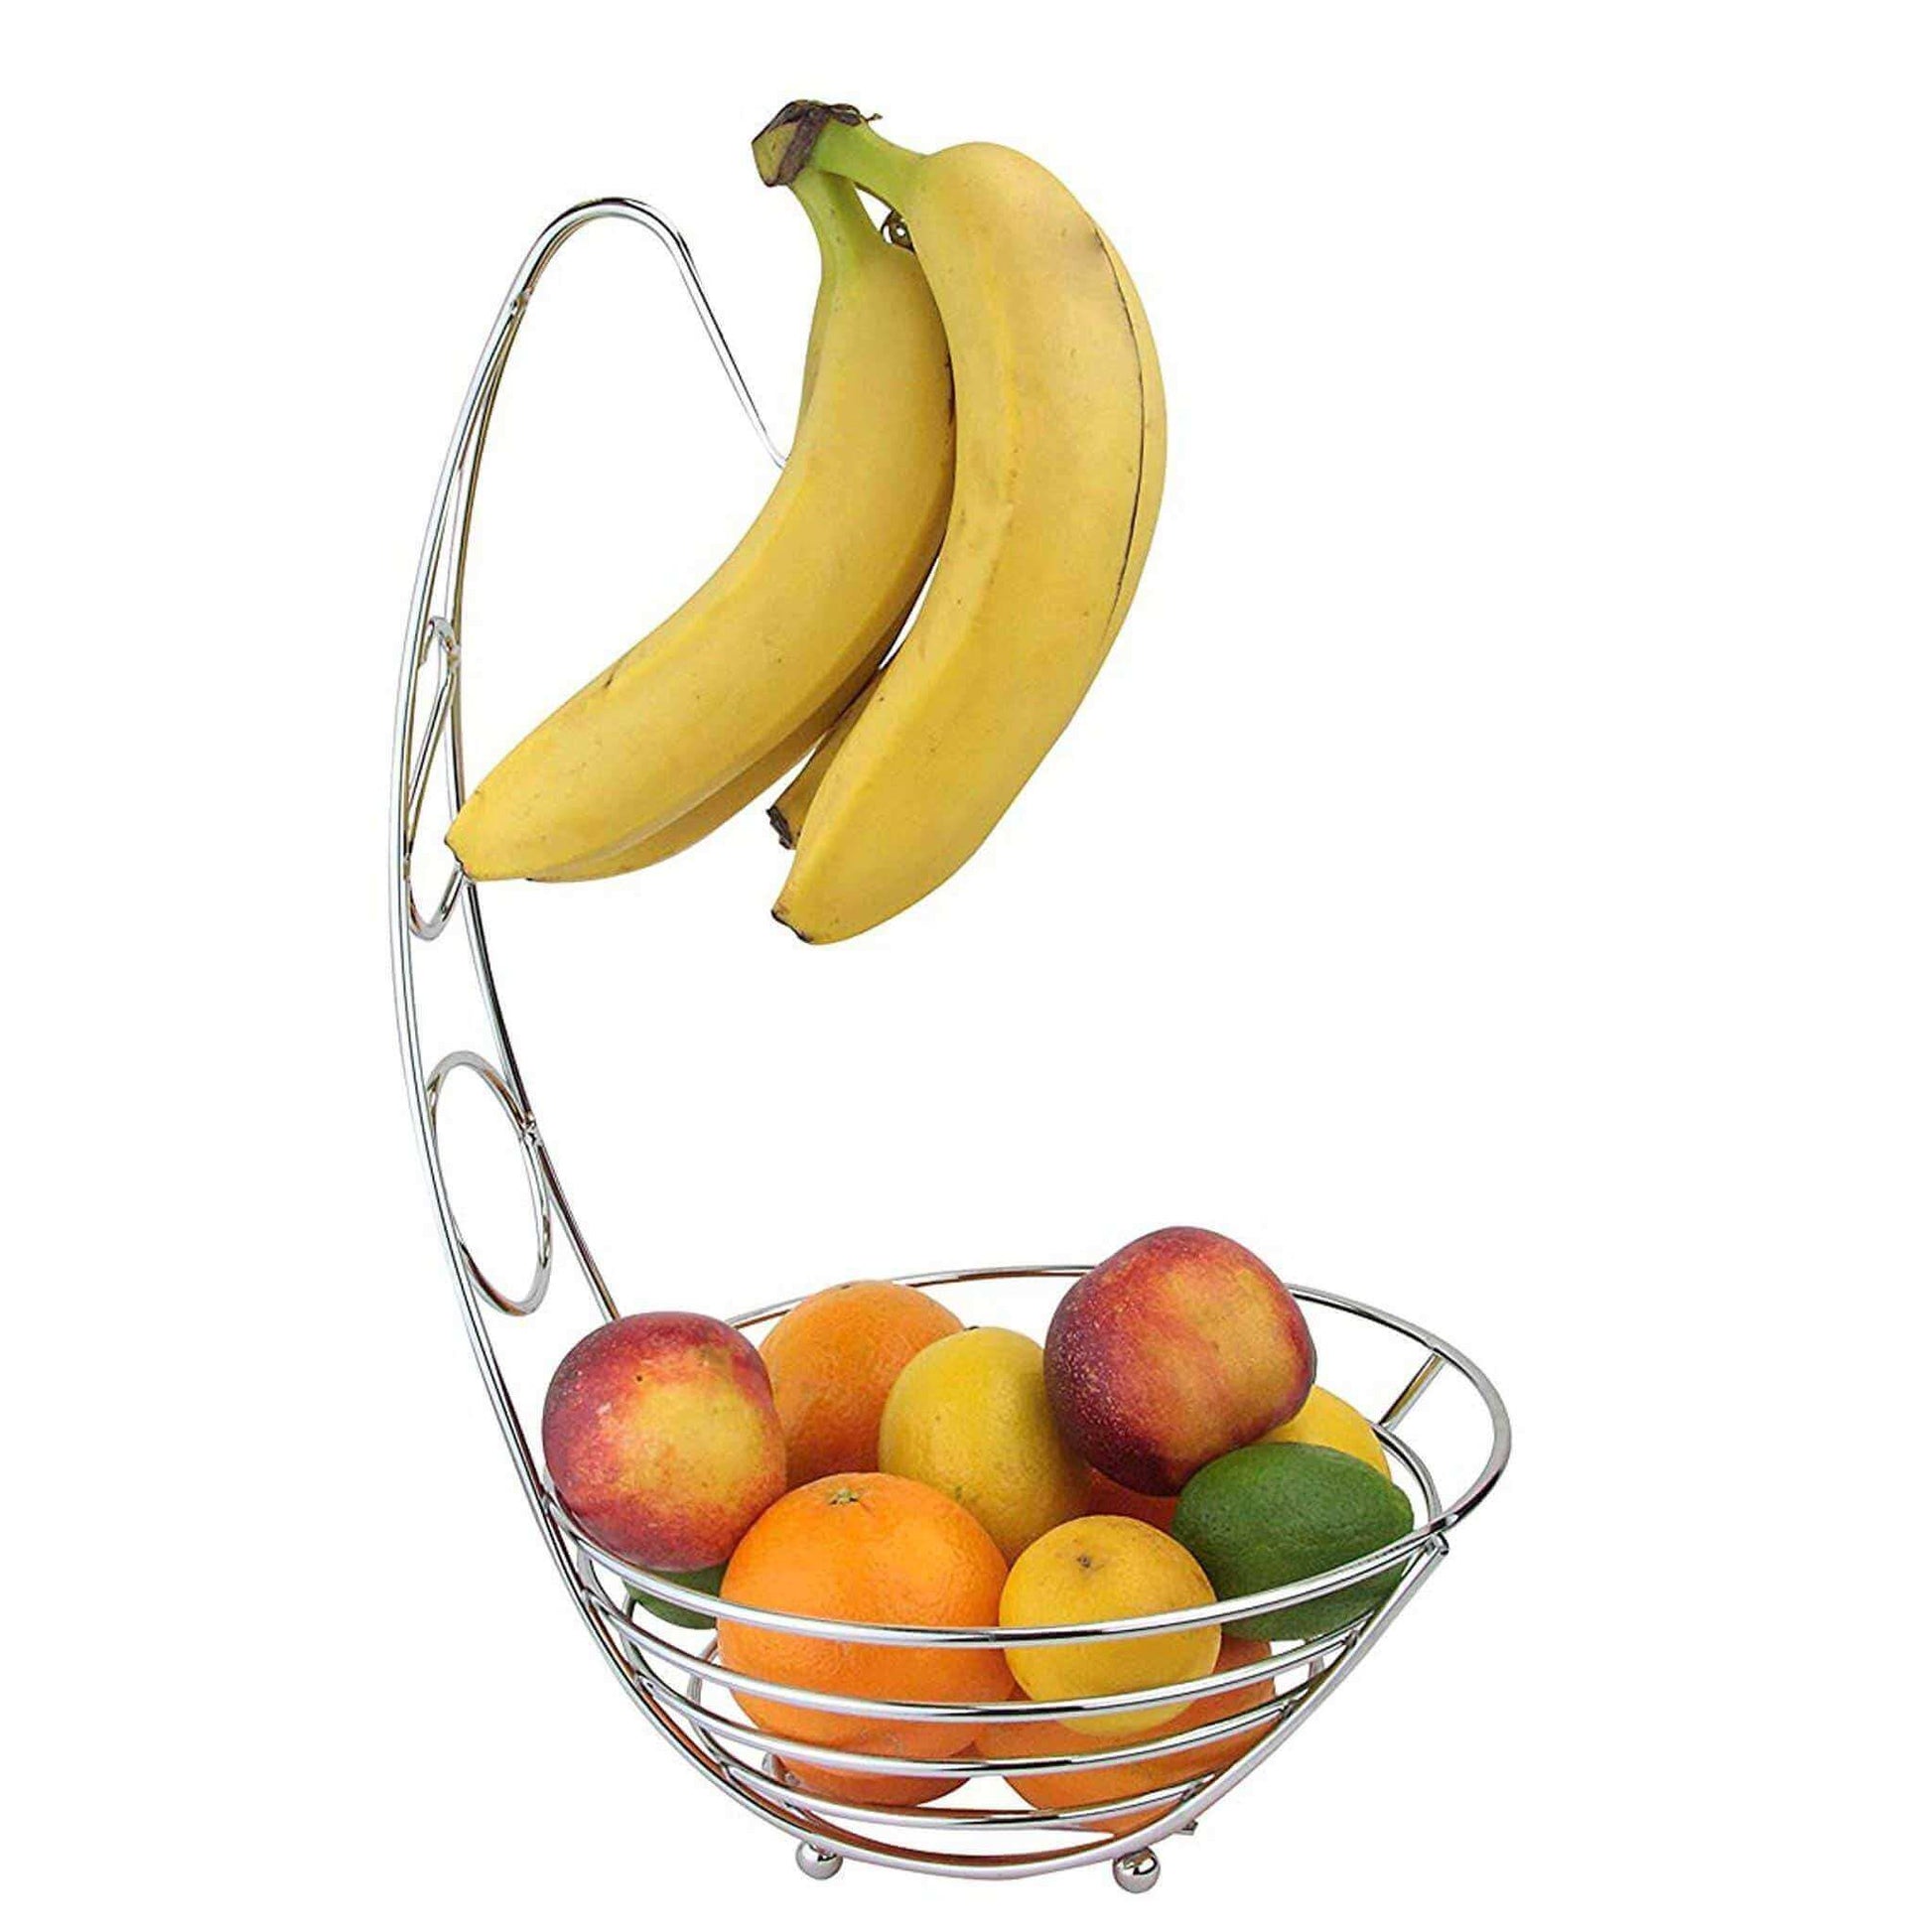 Kitchenware  -  Apollo Chrome Banana Tree Bowl  -  01361193